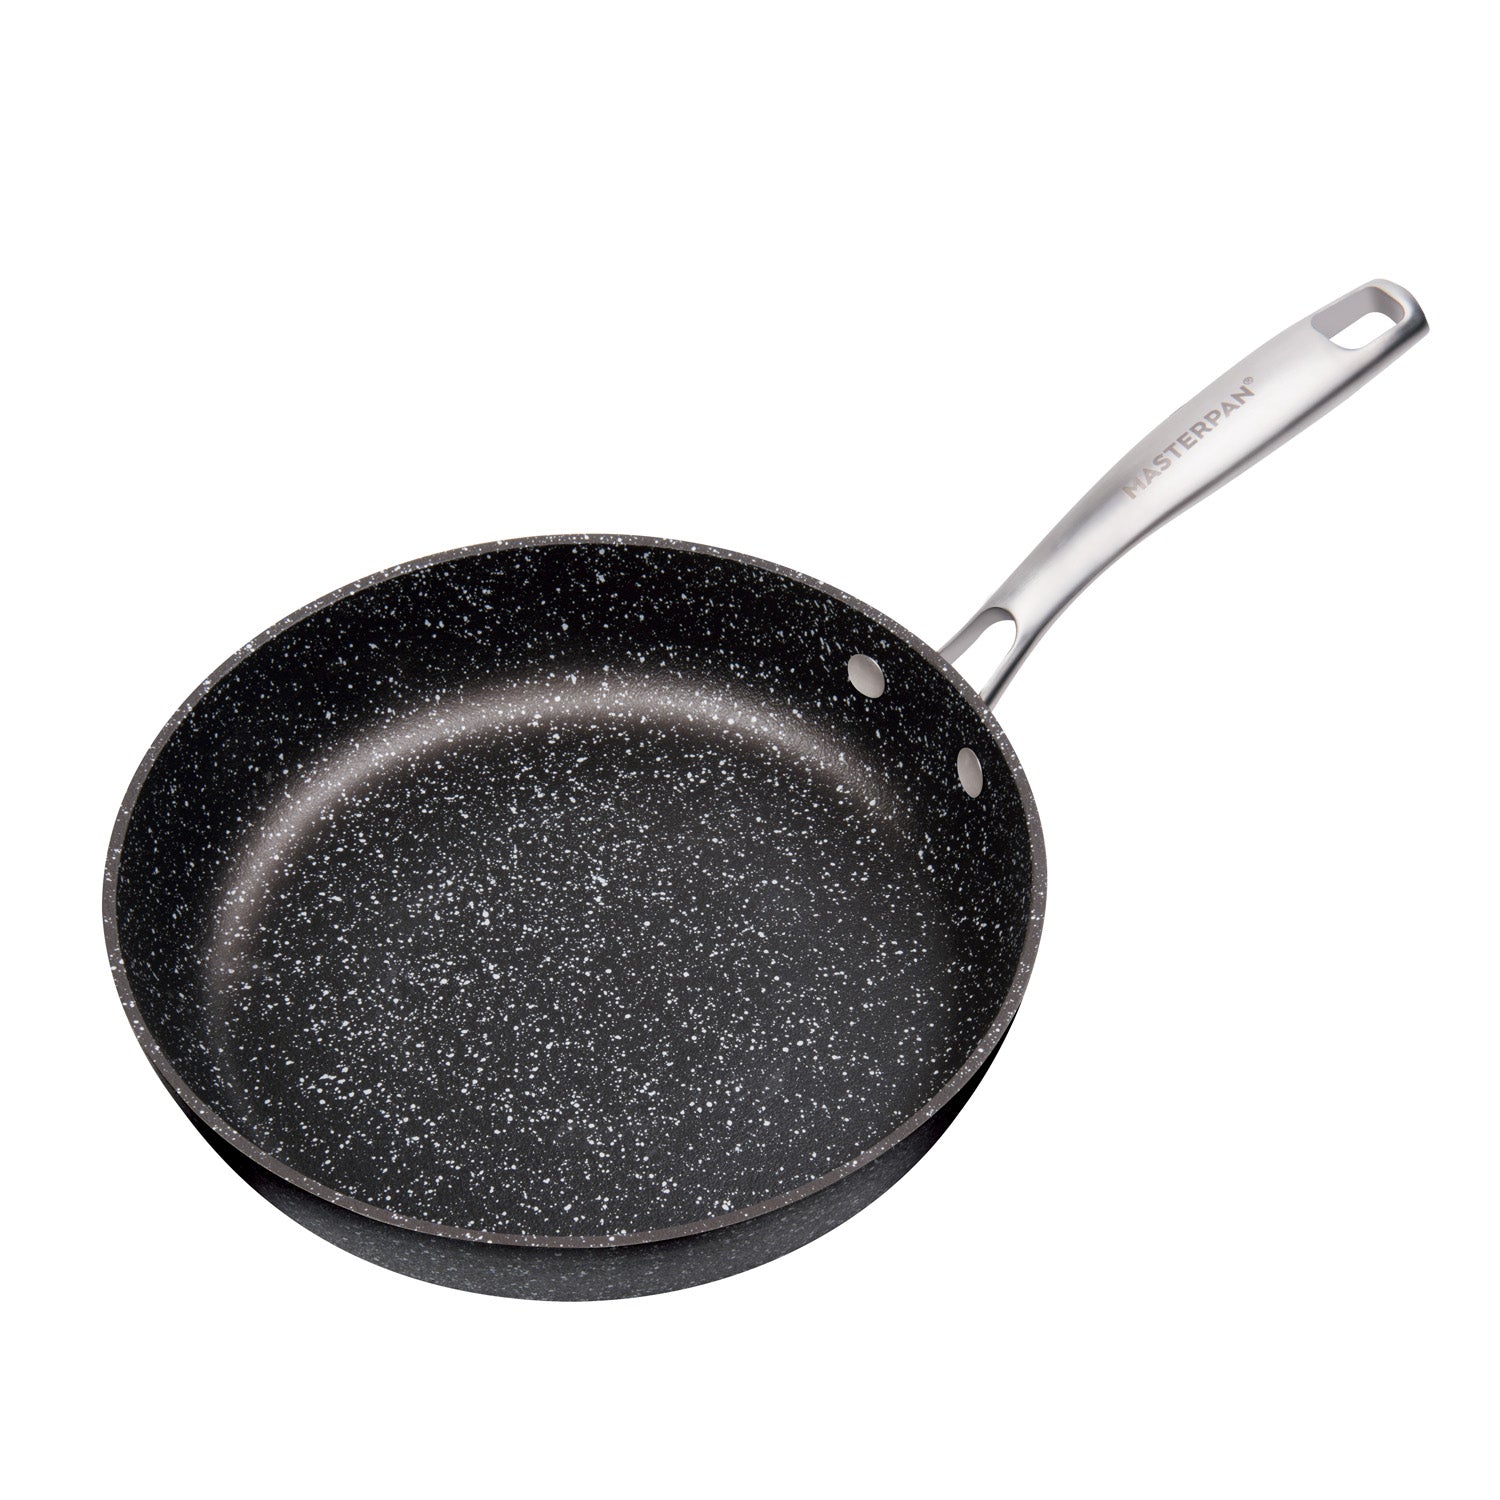 Nonstick Frying Pan, Granite Skillet, Egg Fry Pan, Round Pancake